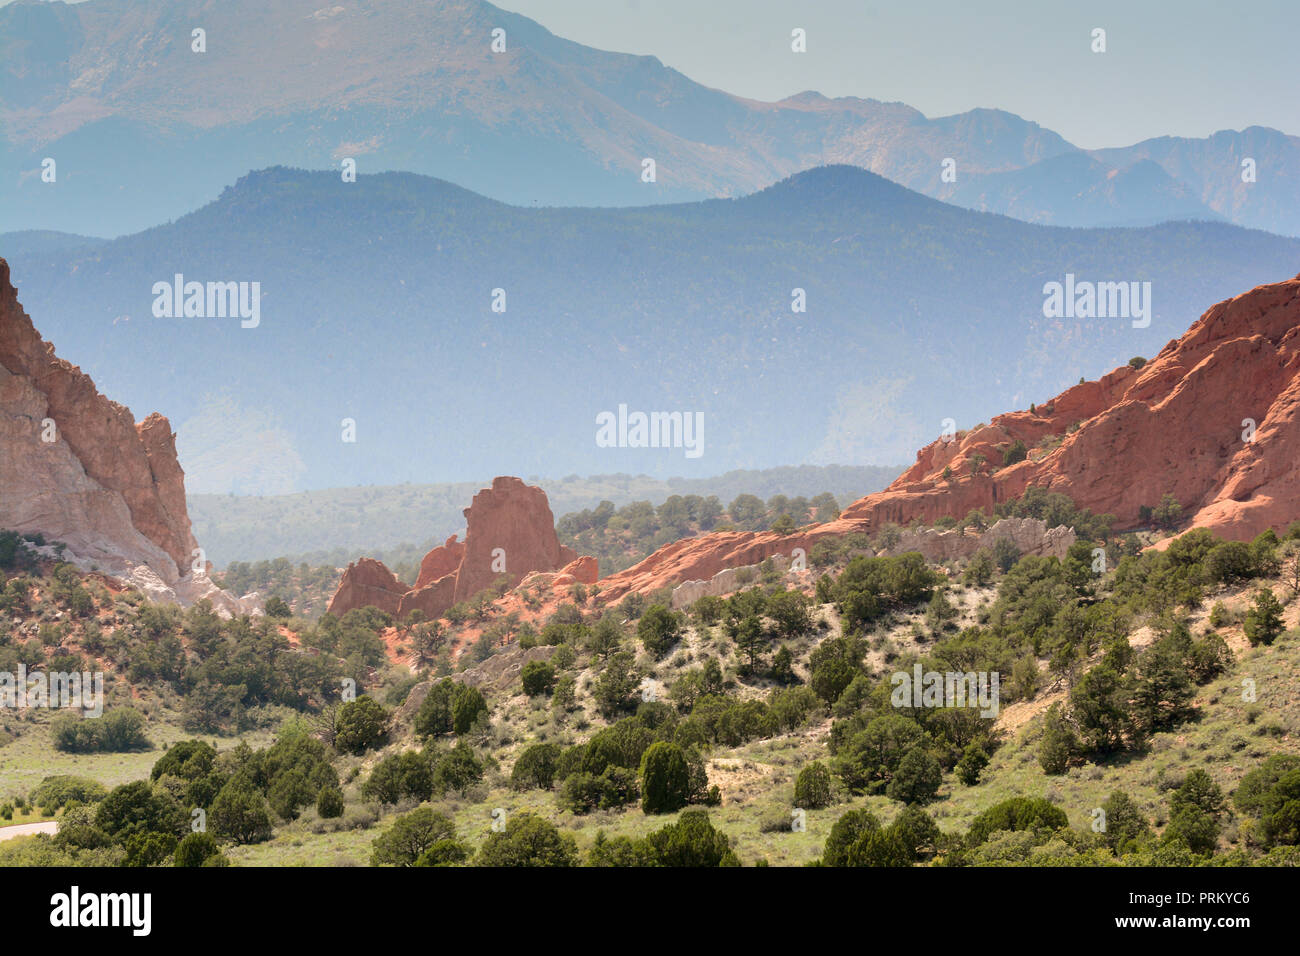 Garden Of The Gods Mountain Landscape In Colorado Stock Photo